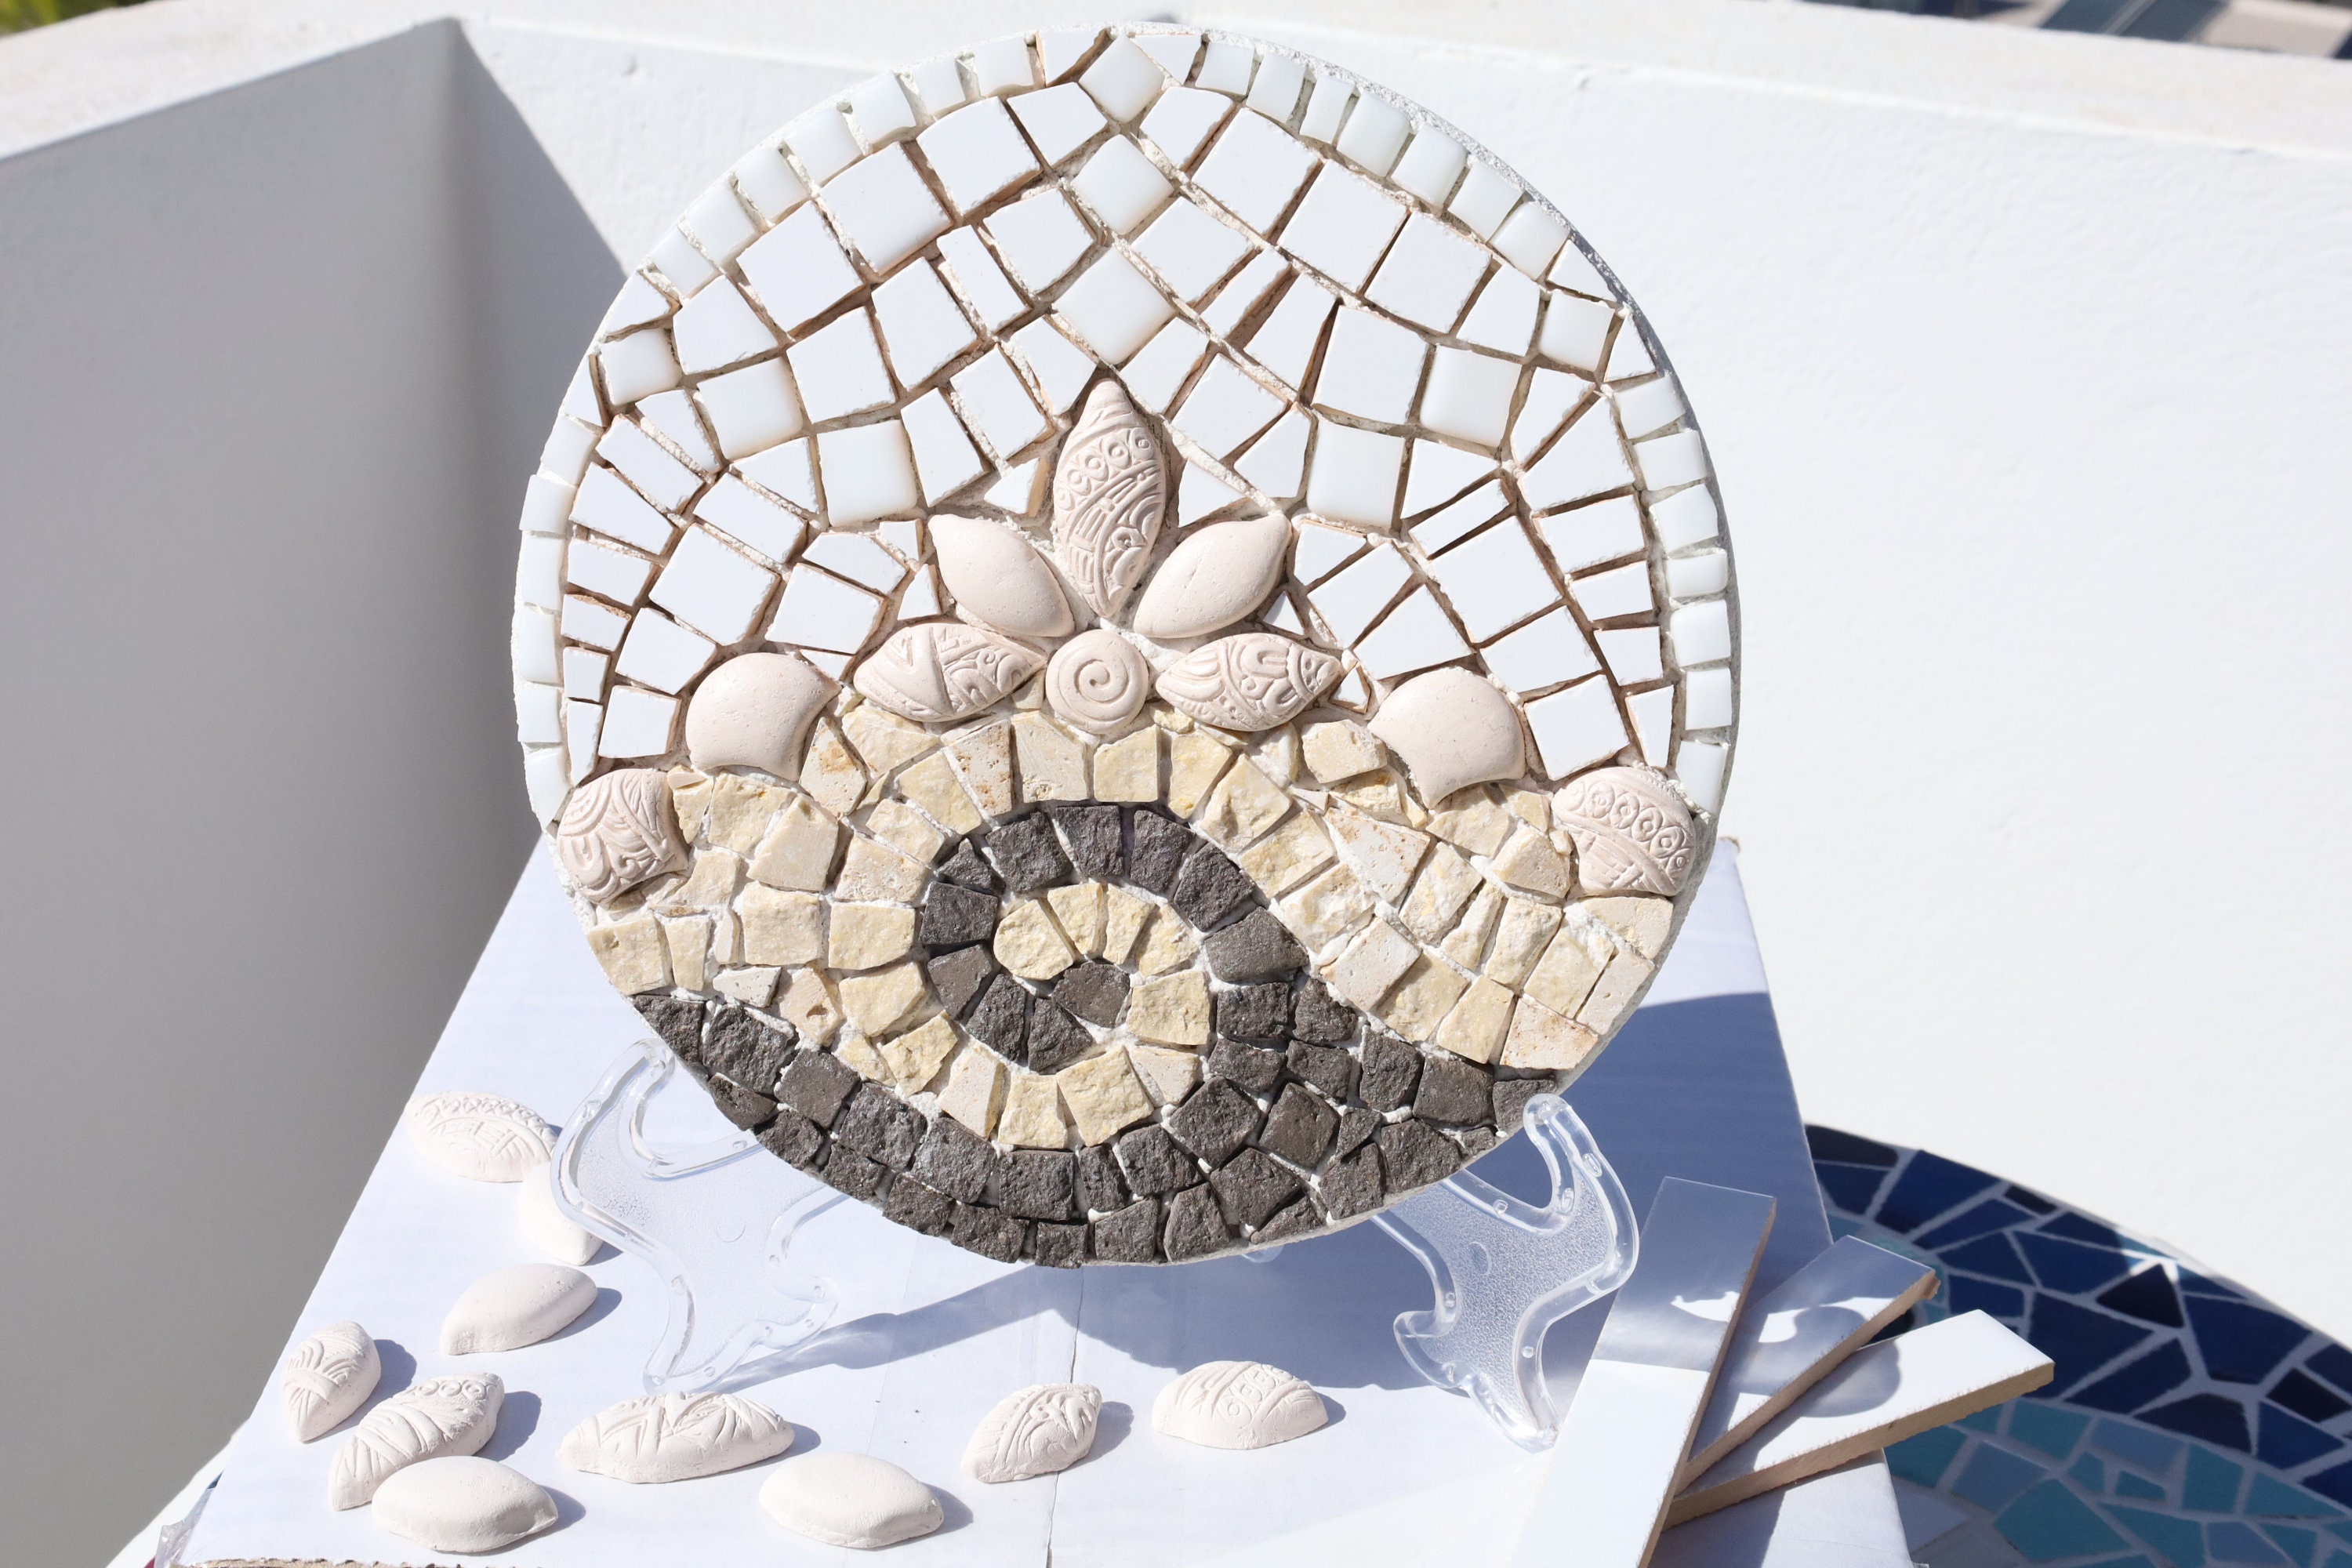 Mozaico Mosaïques - Arbre en fleurs - Motifs mosaïque - Décoration murale  en mosaïque - Incrustation de sol - Mosaïques faites à la main : :  Maison